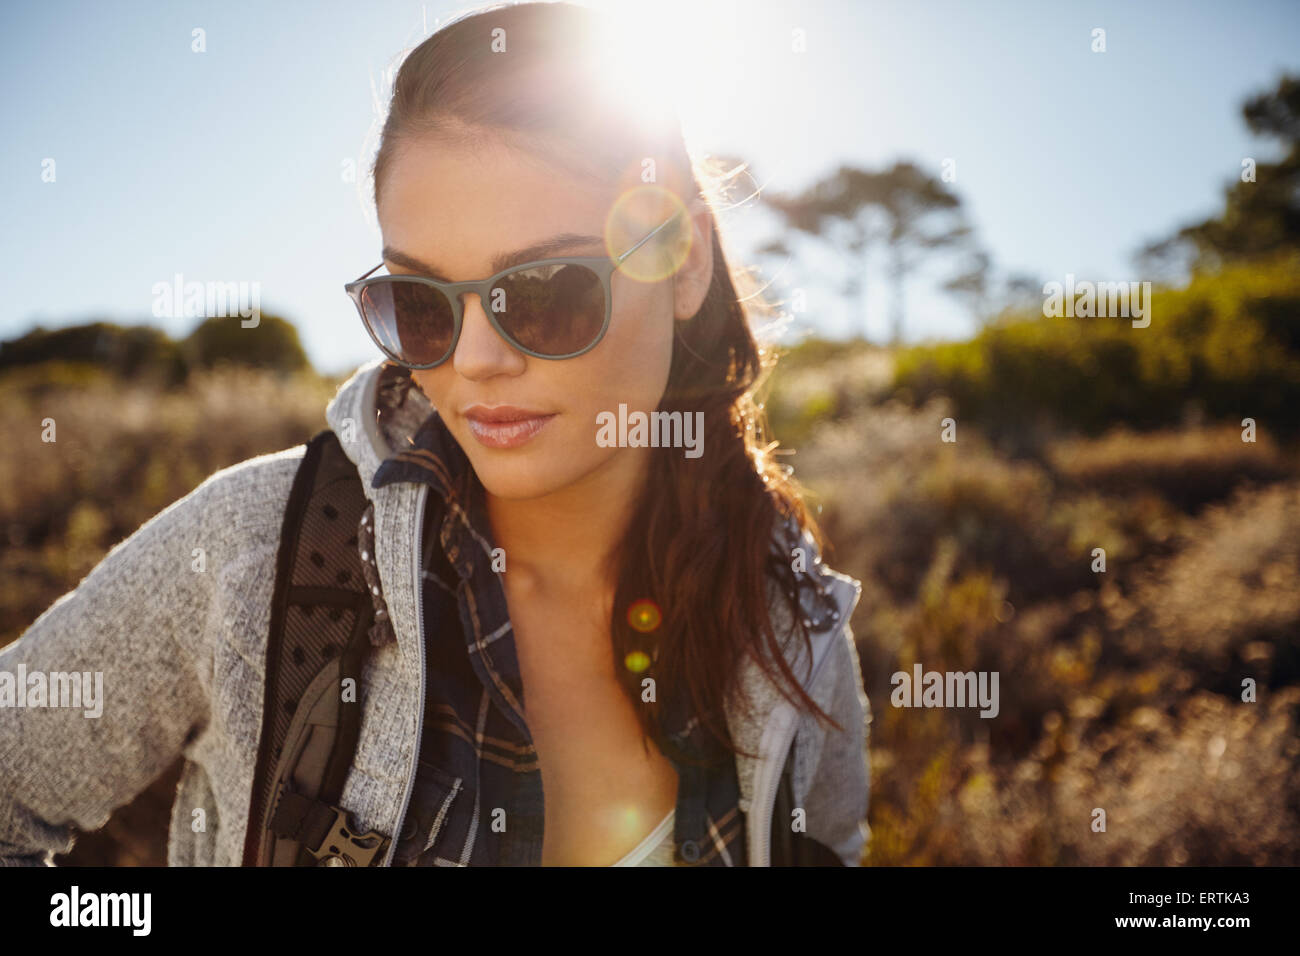 De plein air randonnée dans une réserve naturelle au soleil. Pretty young female hiker portant des lunettes de soleil à la recherche vers le bas avec su Banque D'Images